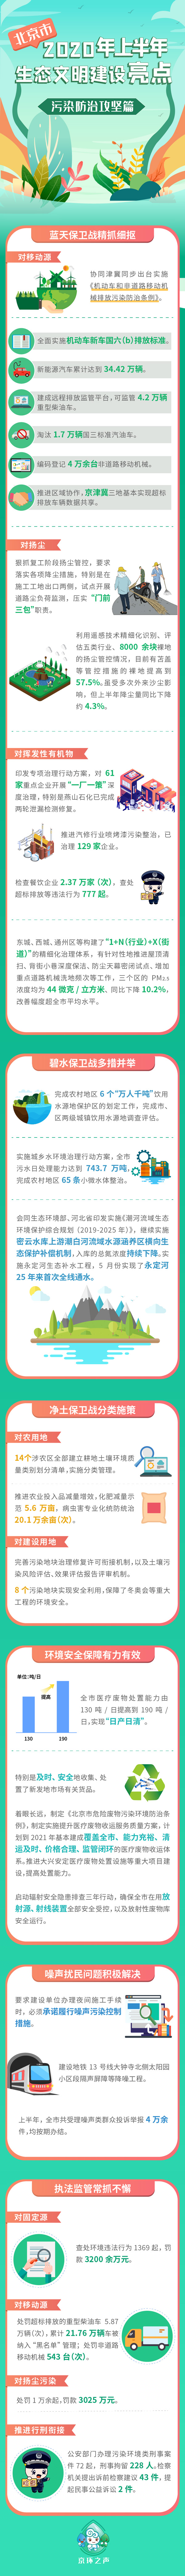 北京市2020年上半年生态文明建设亮点——污染防治攻坚篇